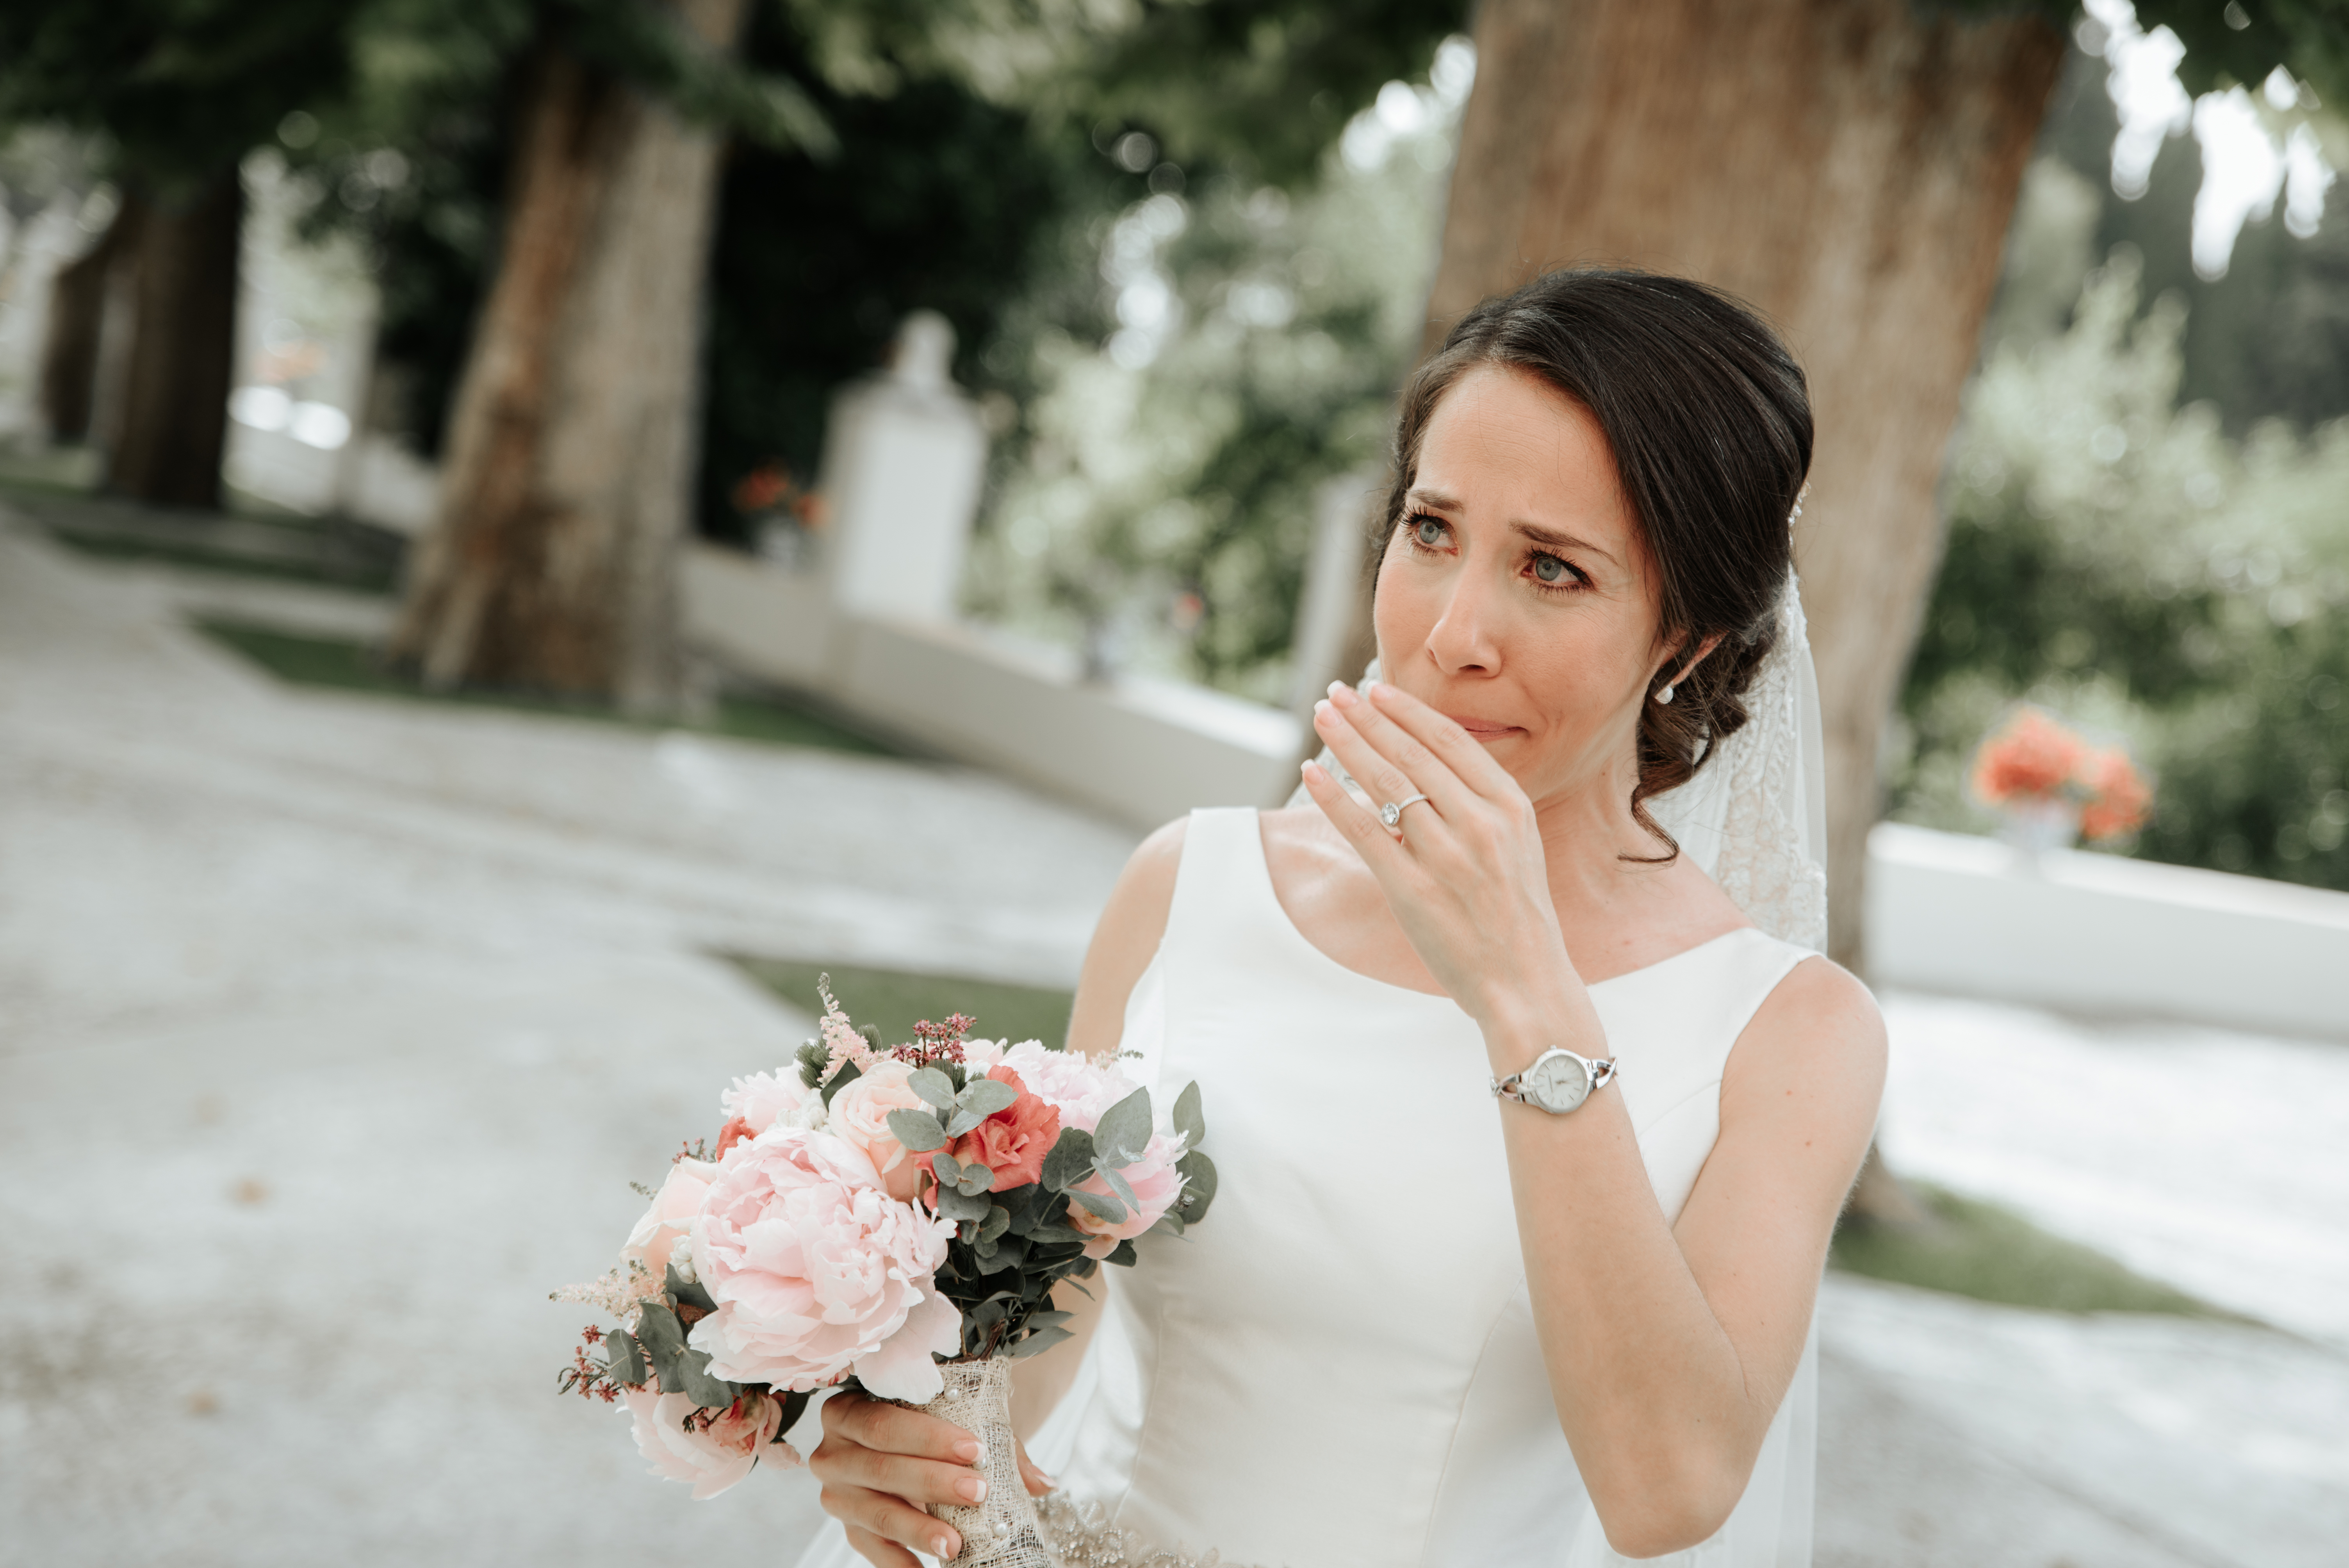 Una novia llora mientras sostiene un ramo. | Foto: Shutterstock